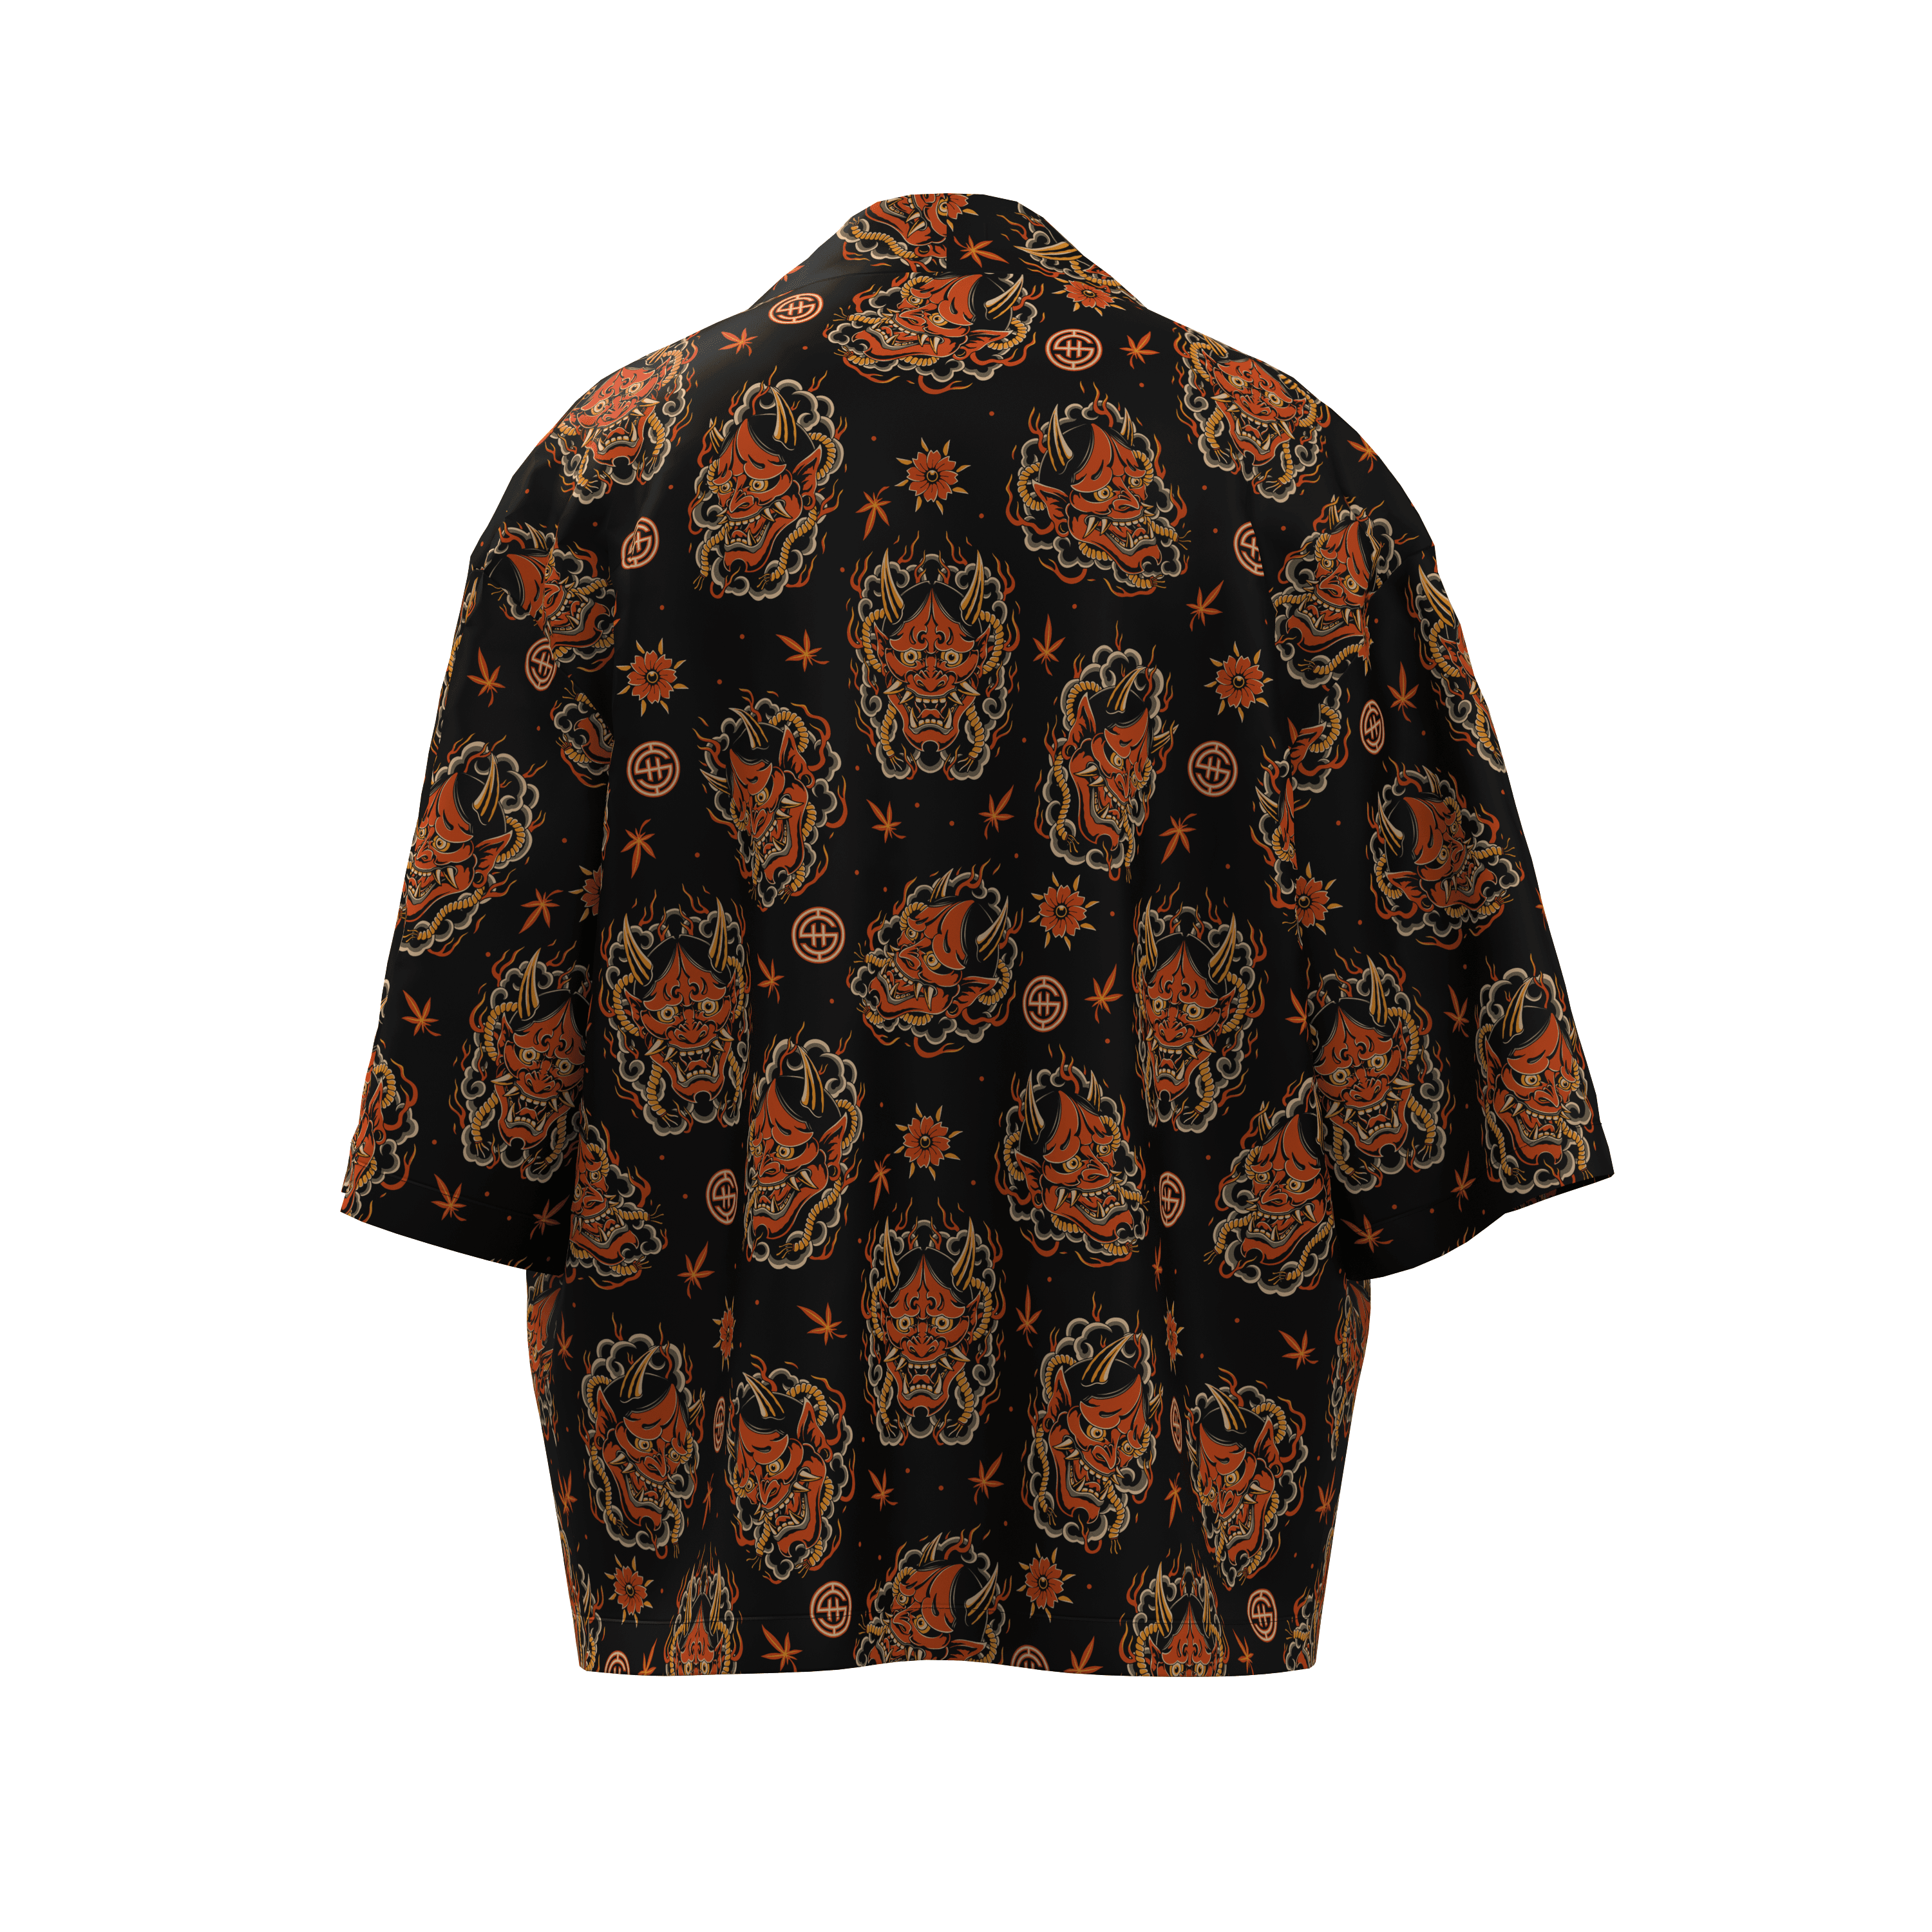 Shout Oversize Japanese Oni Mask Unisex Black Kimono